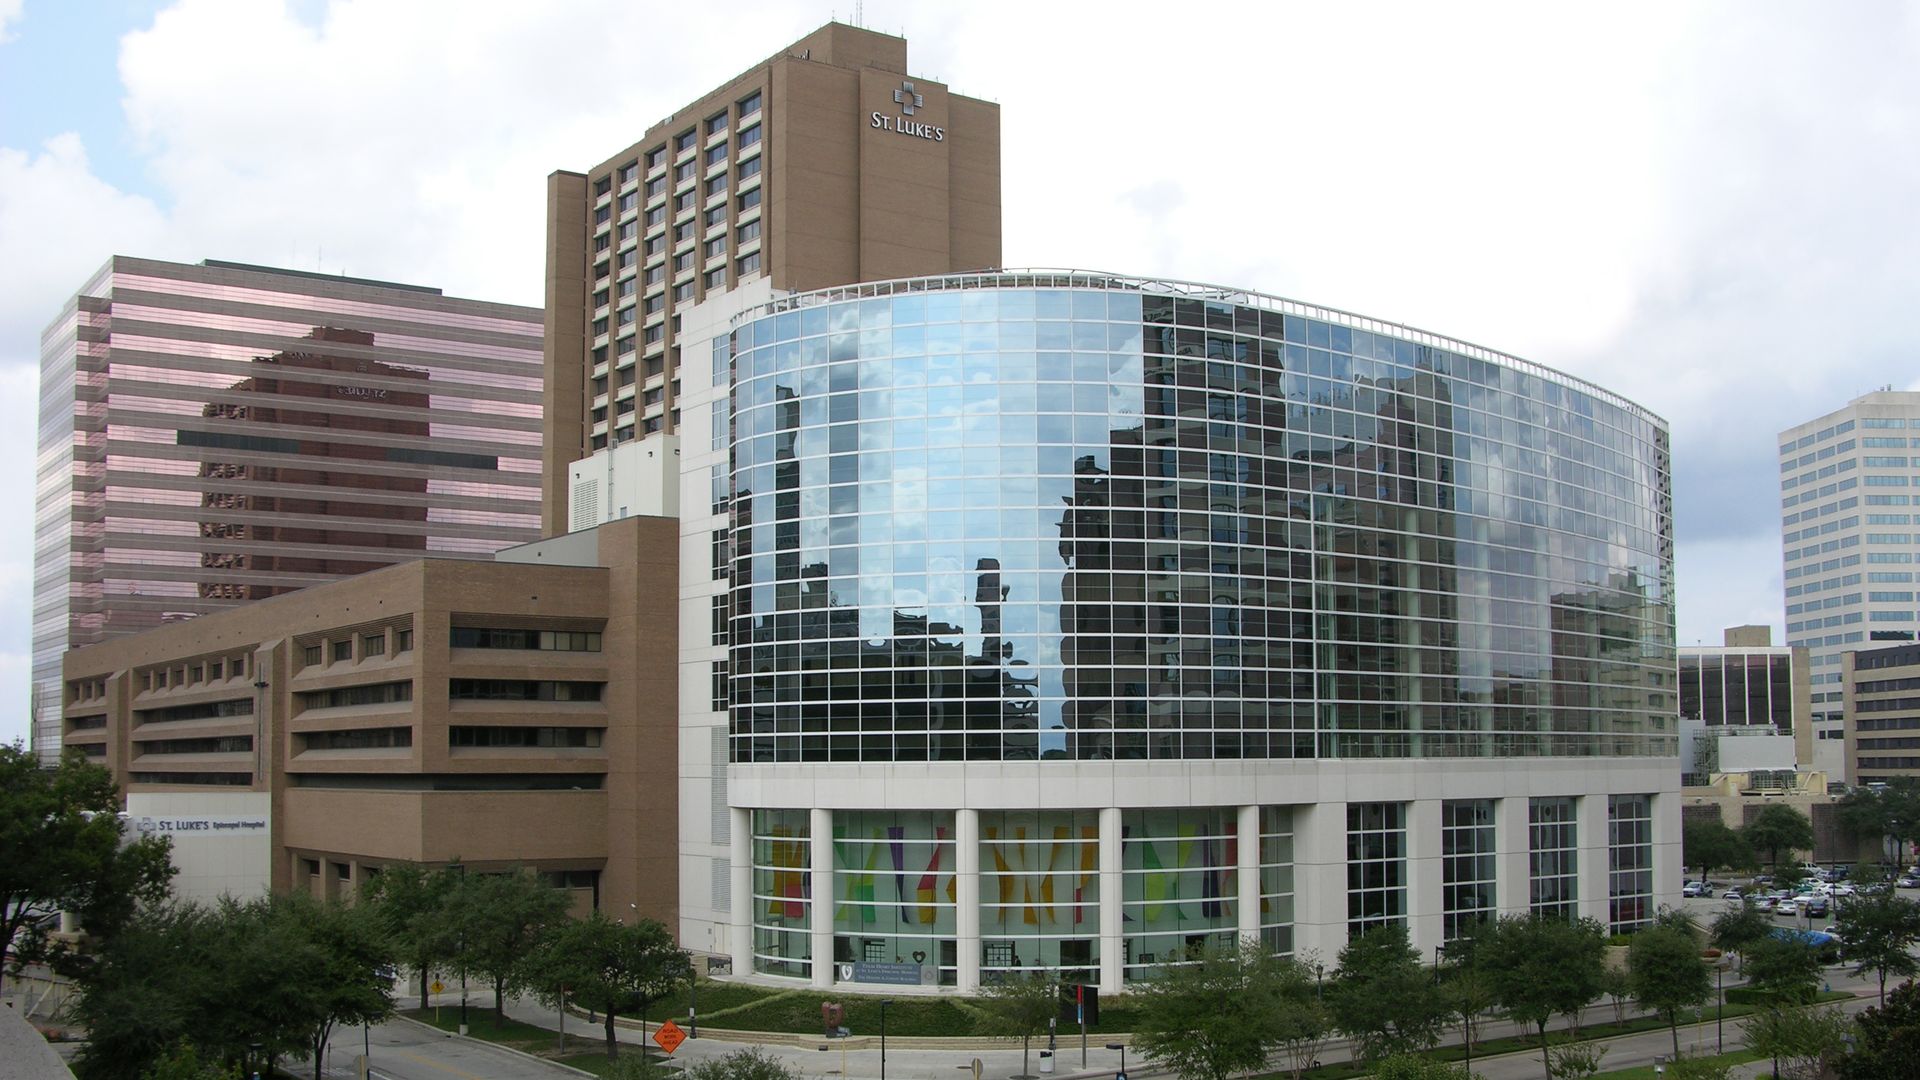 St. Luke's hospital in Houston's Texas Medical Center.